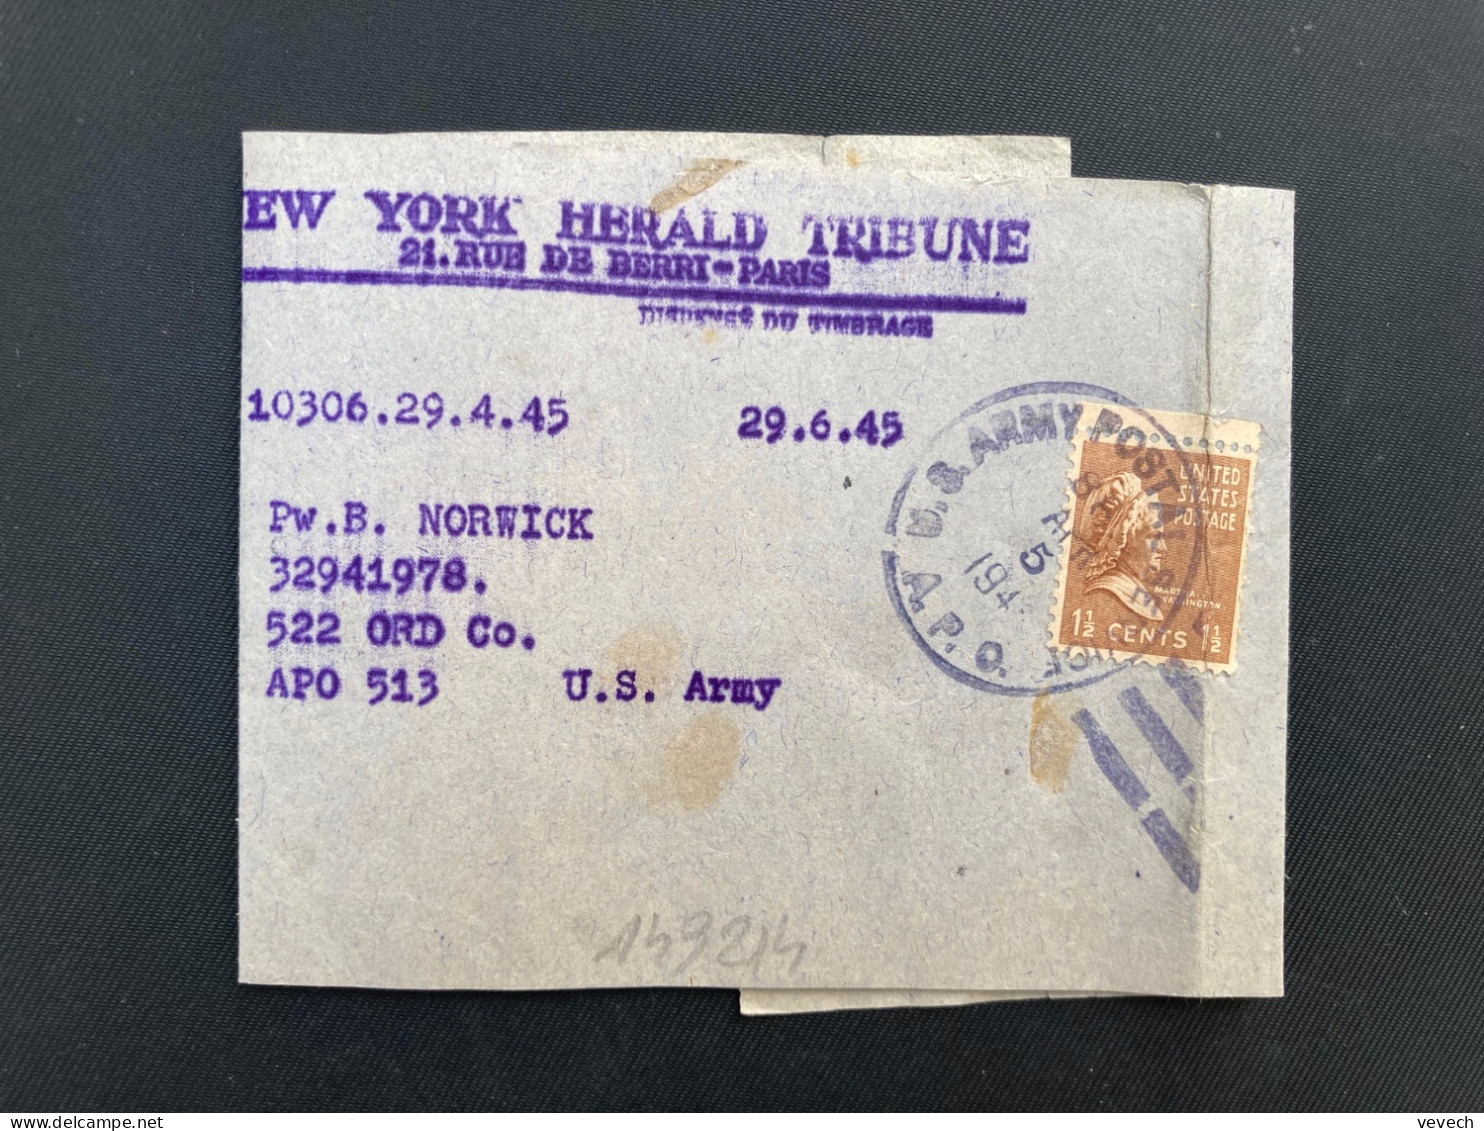 BJ NEW YORK HERALD TRIBUNE Pour APO 513 TP WASHINGTON 1 1/2c OBL.MEC.MAI 24 1945 APO - Postal History